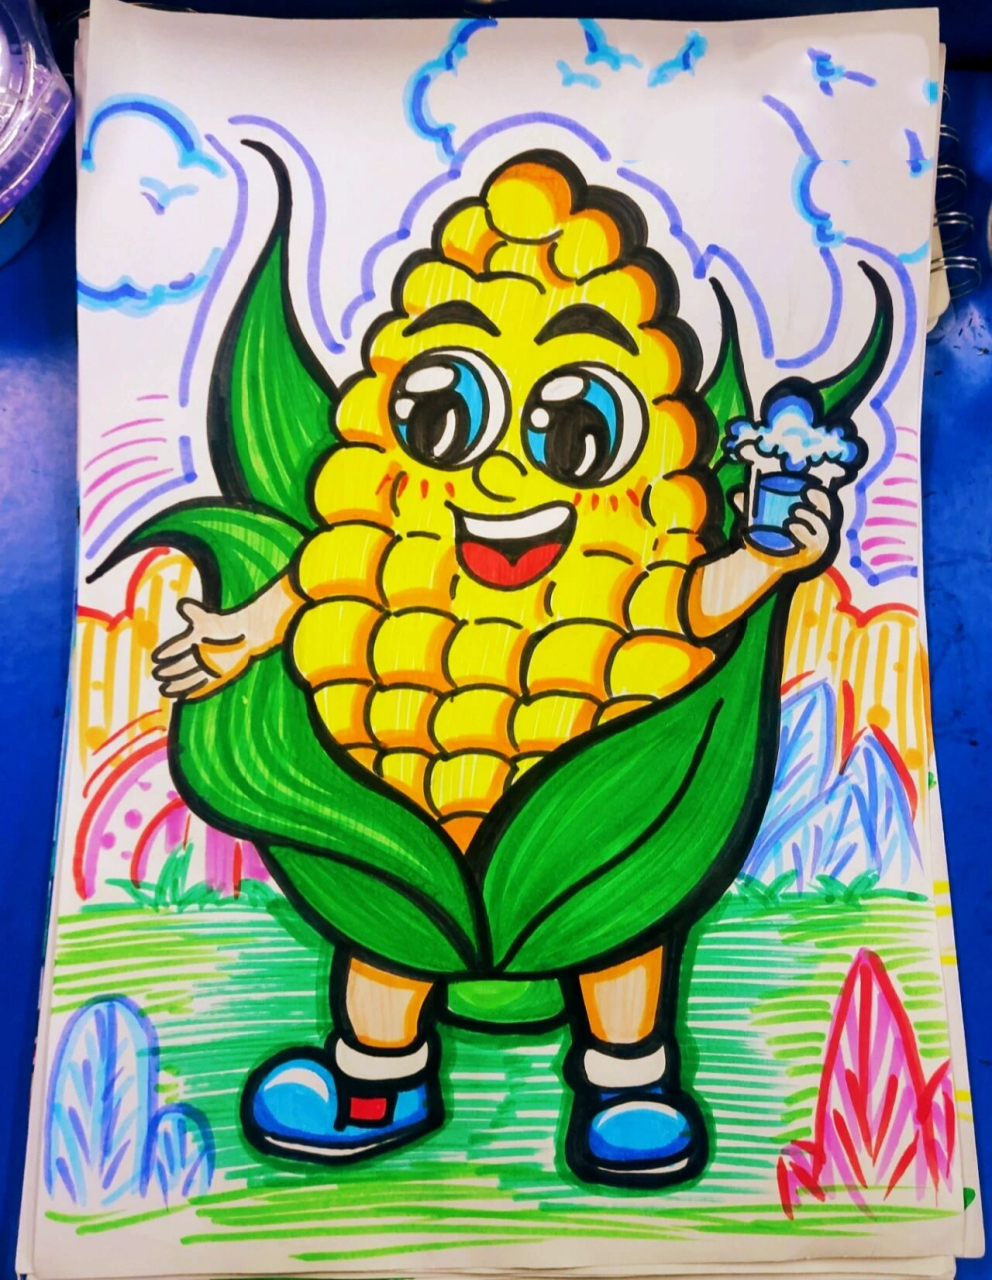 玉米种子的简笔画图片